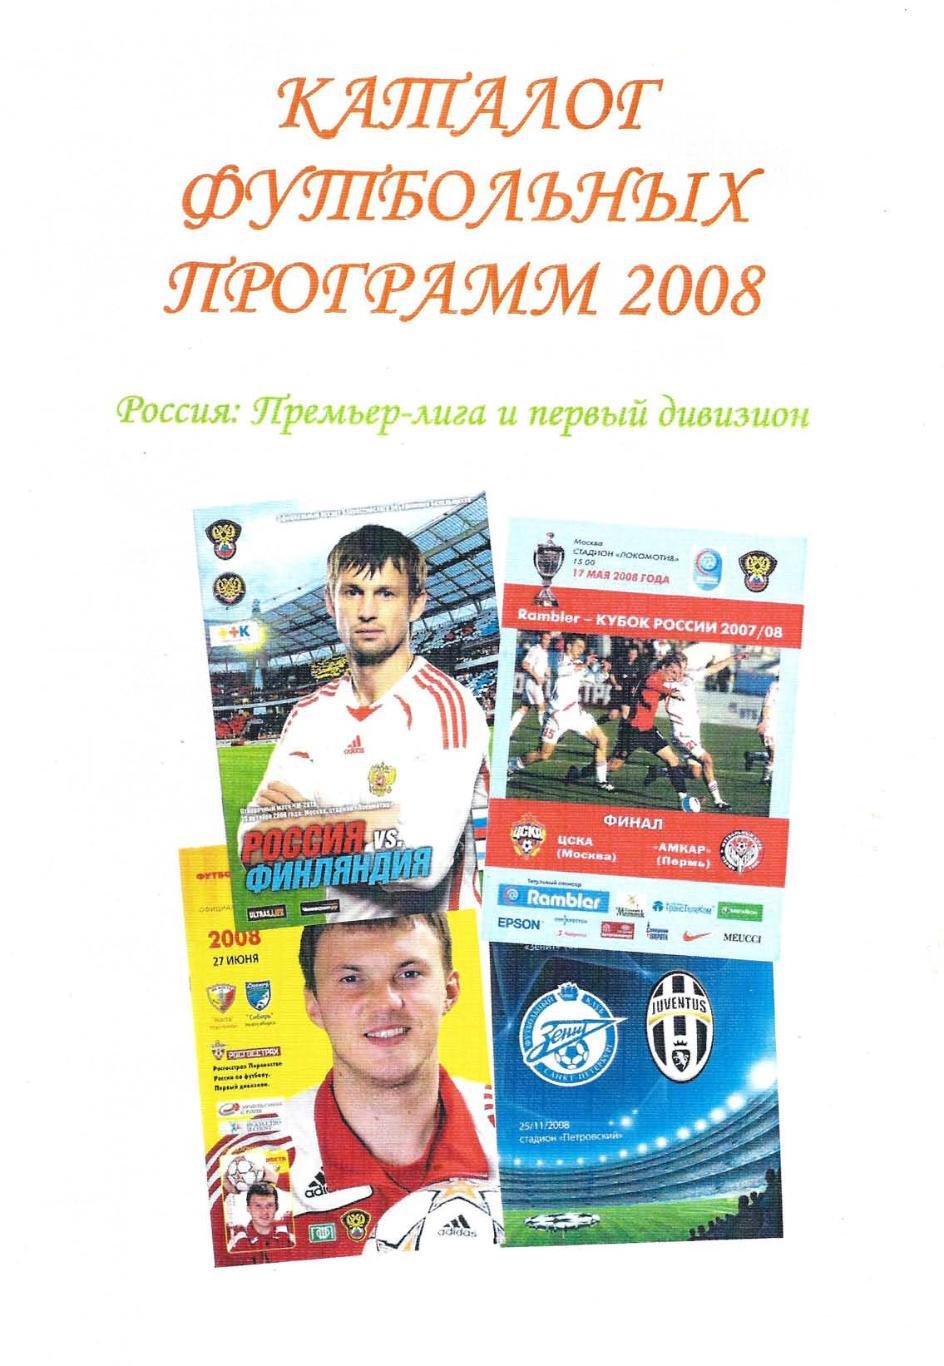 Каталог футбольных программ 2008. Премьер-лига и первый дивизион.